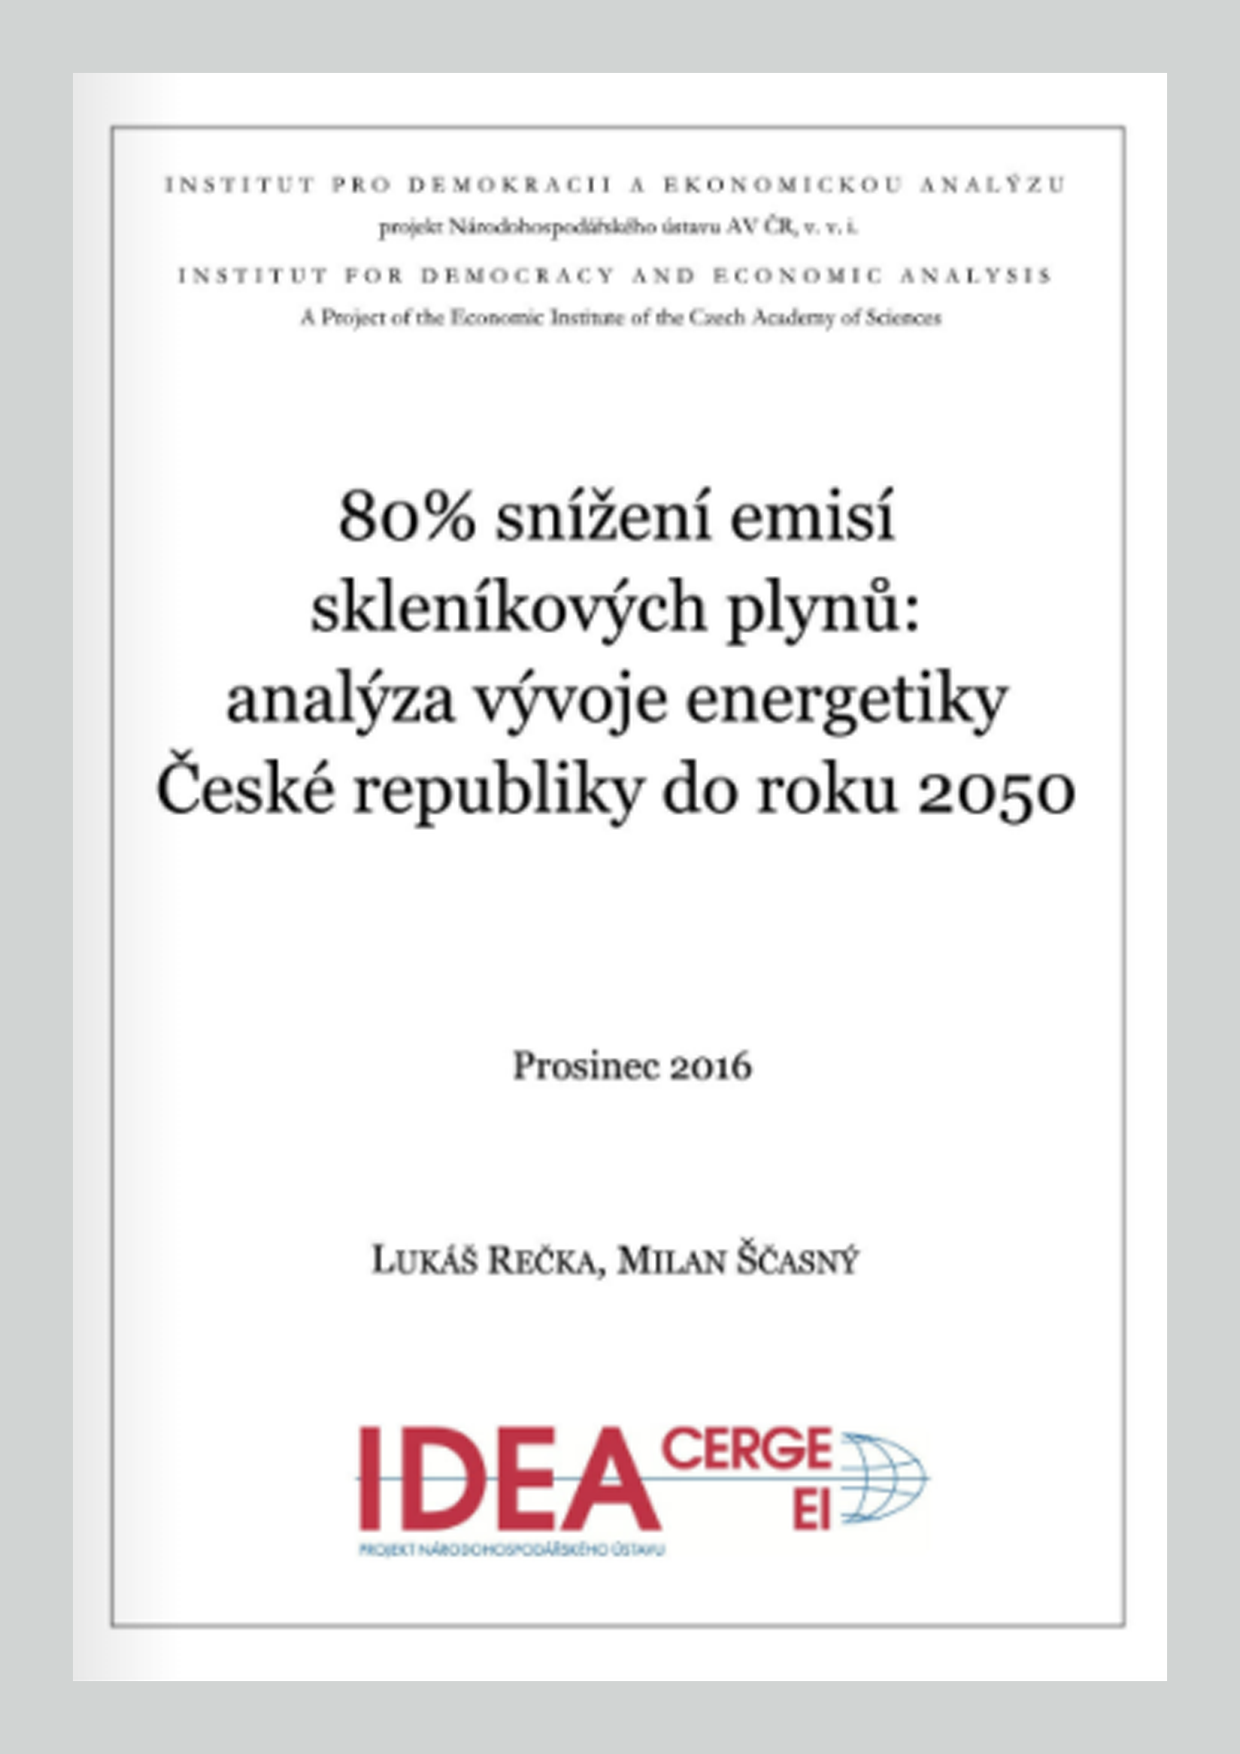 80% snížení emisí skleníkových plynů: analýza vývoje energetiky České republiky do roku 2050